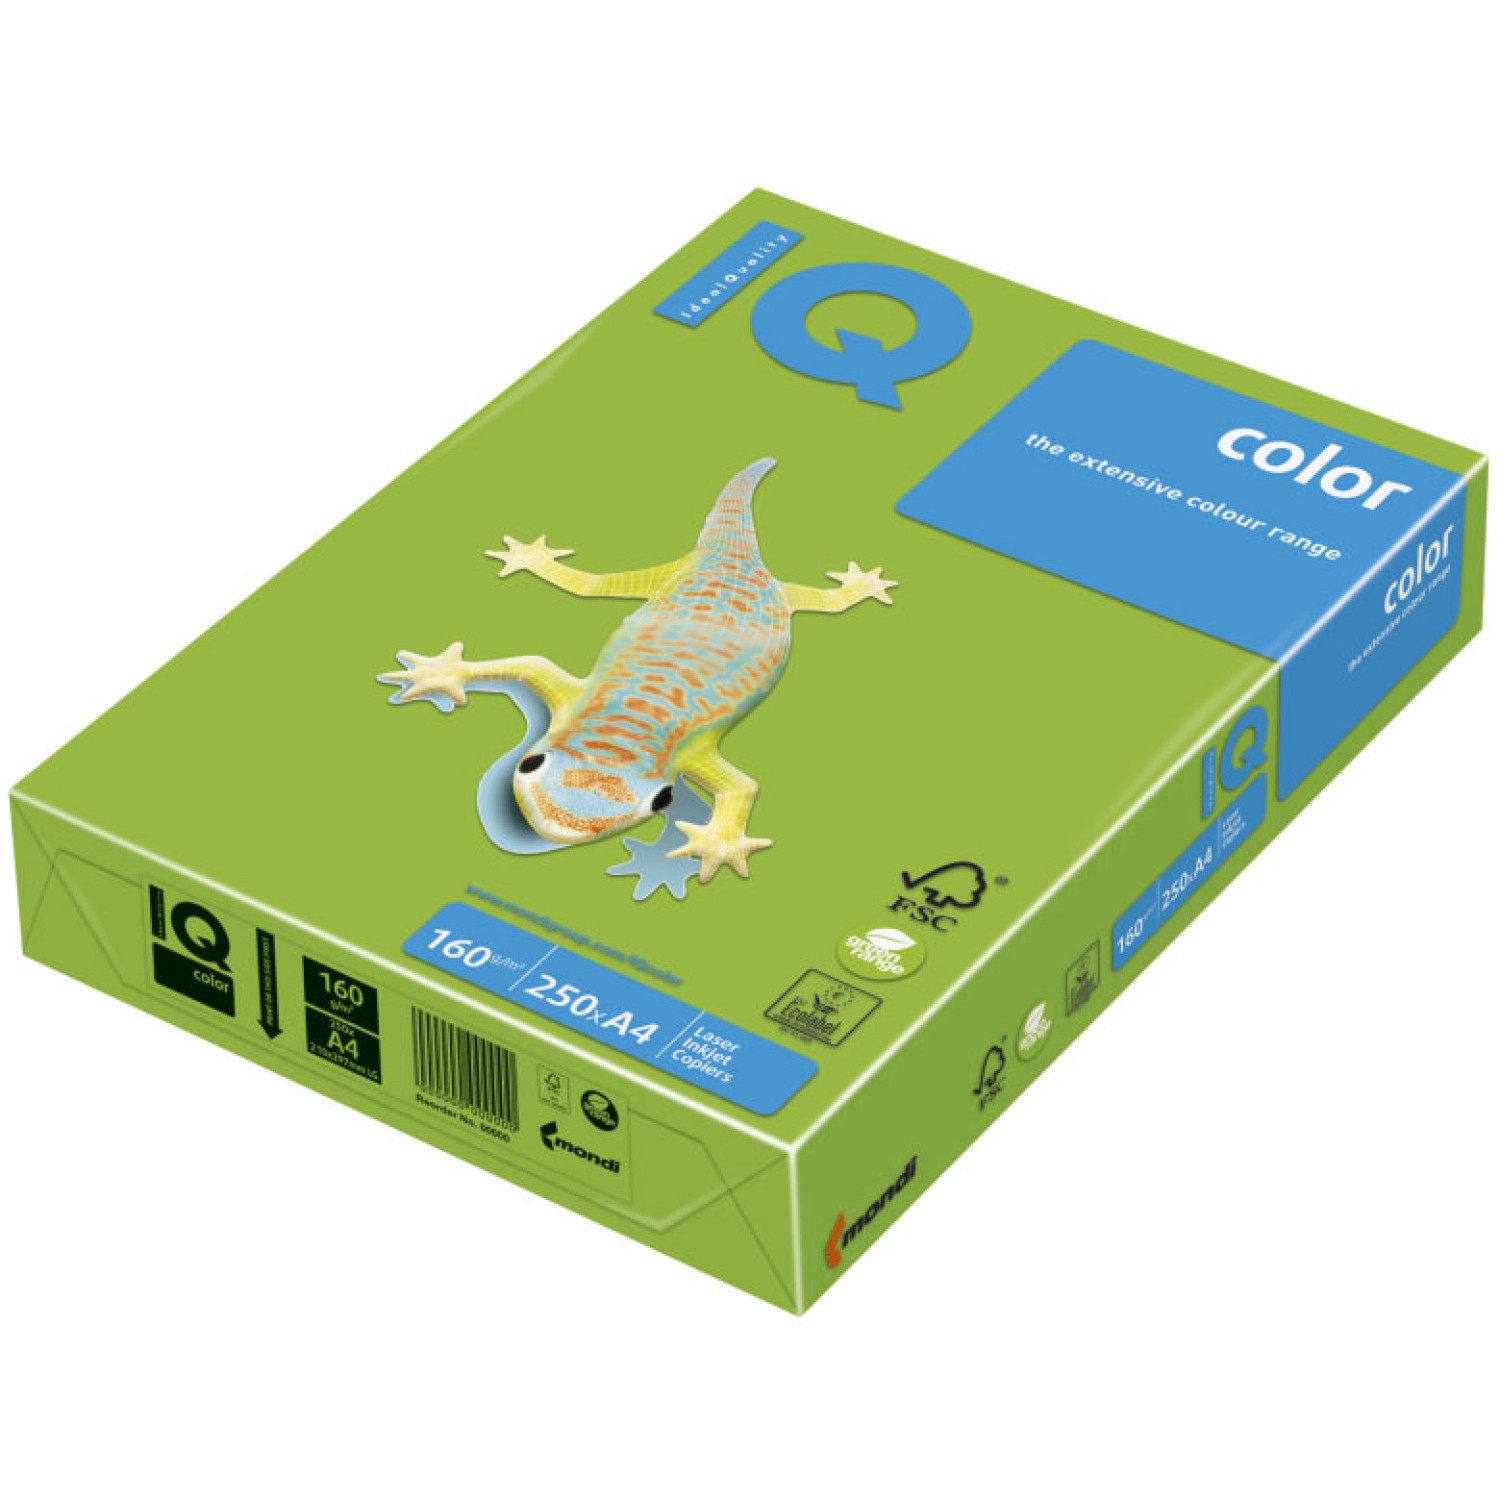 Копирен картон IQ MA42, 160 гр., тревисто зелен